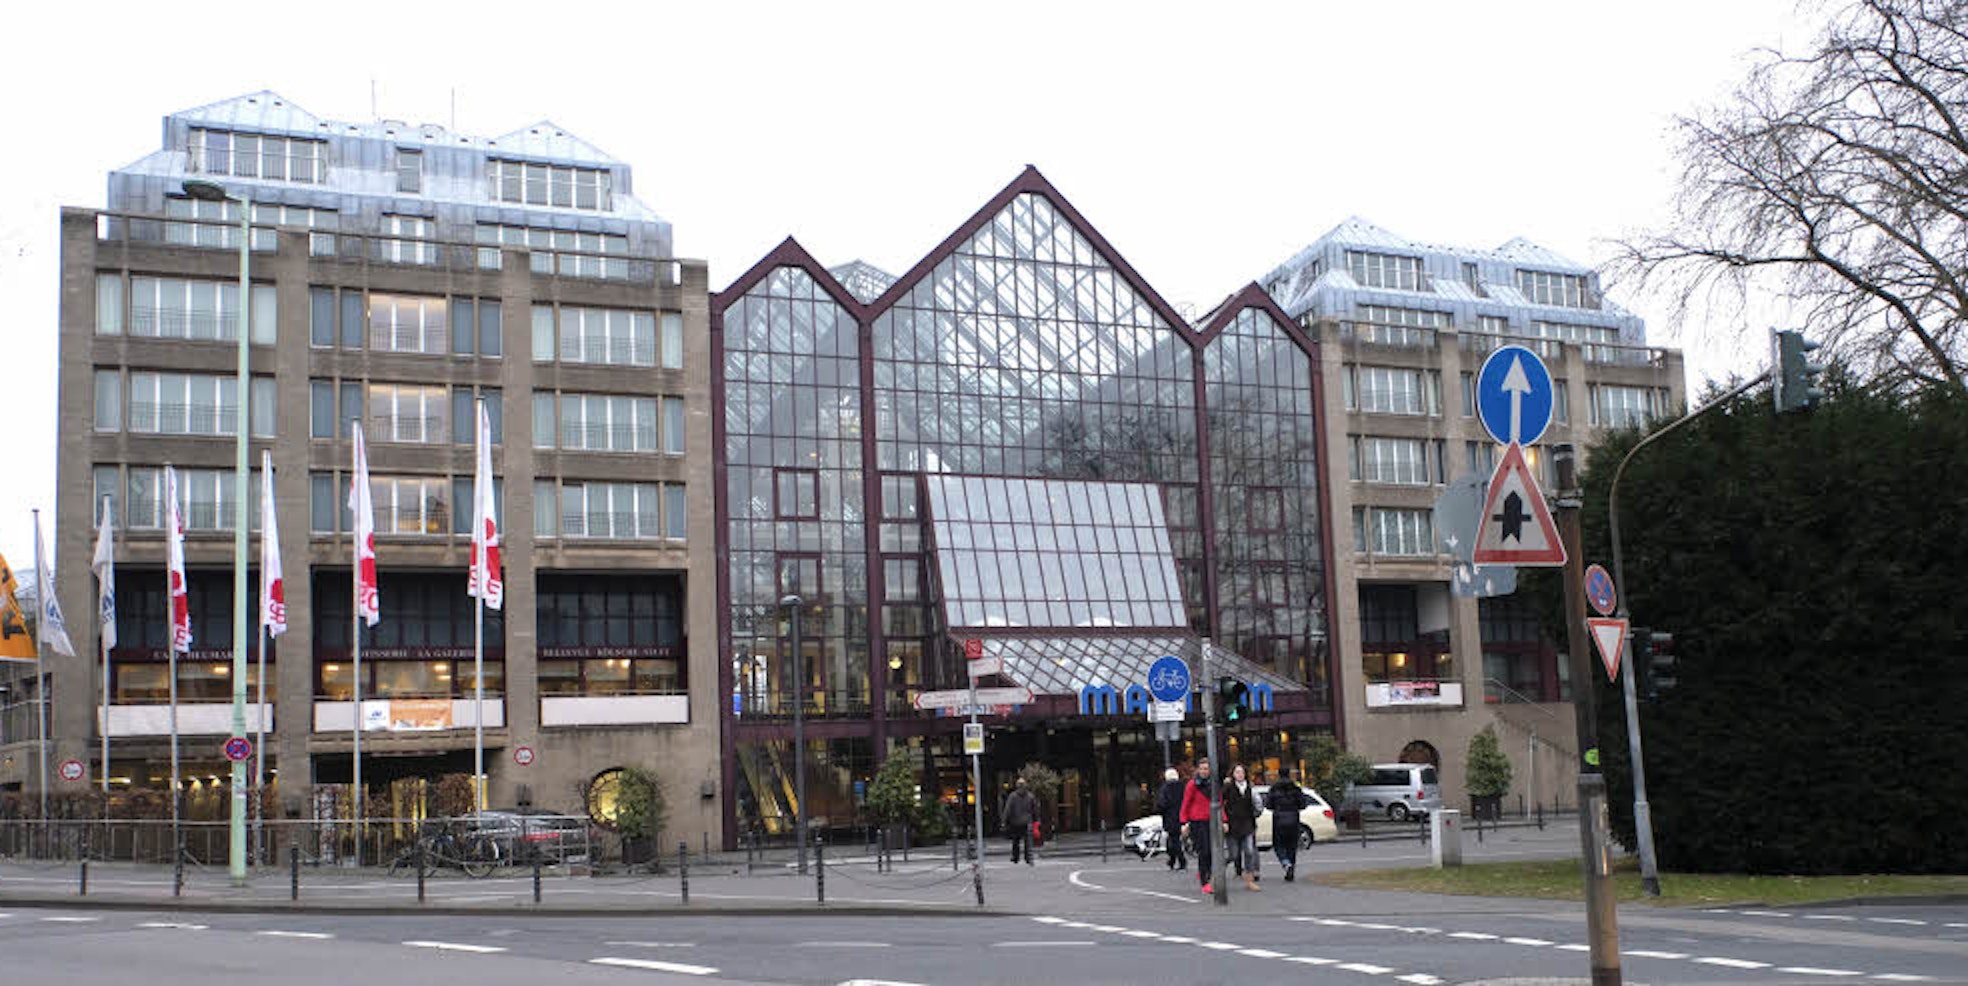 Laut Immobilien-Zeitung soll der Kaufpreis des Hotels bei rund 120 Millionen Euro liegen.